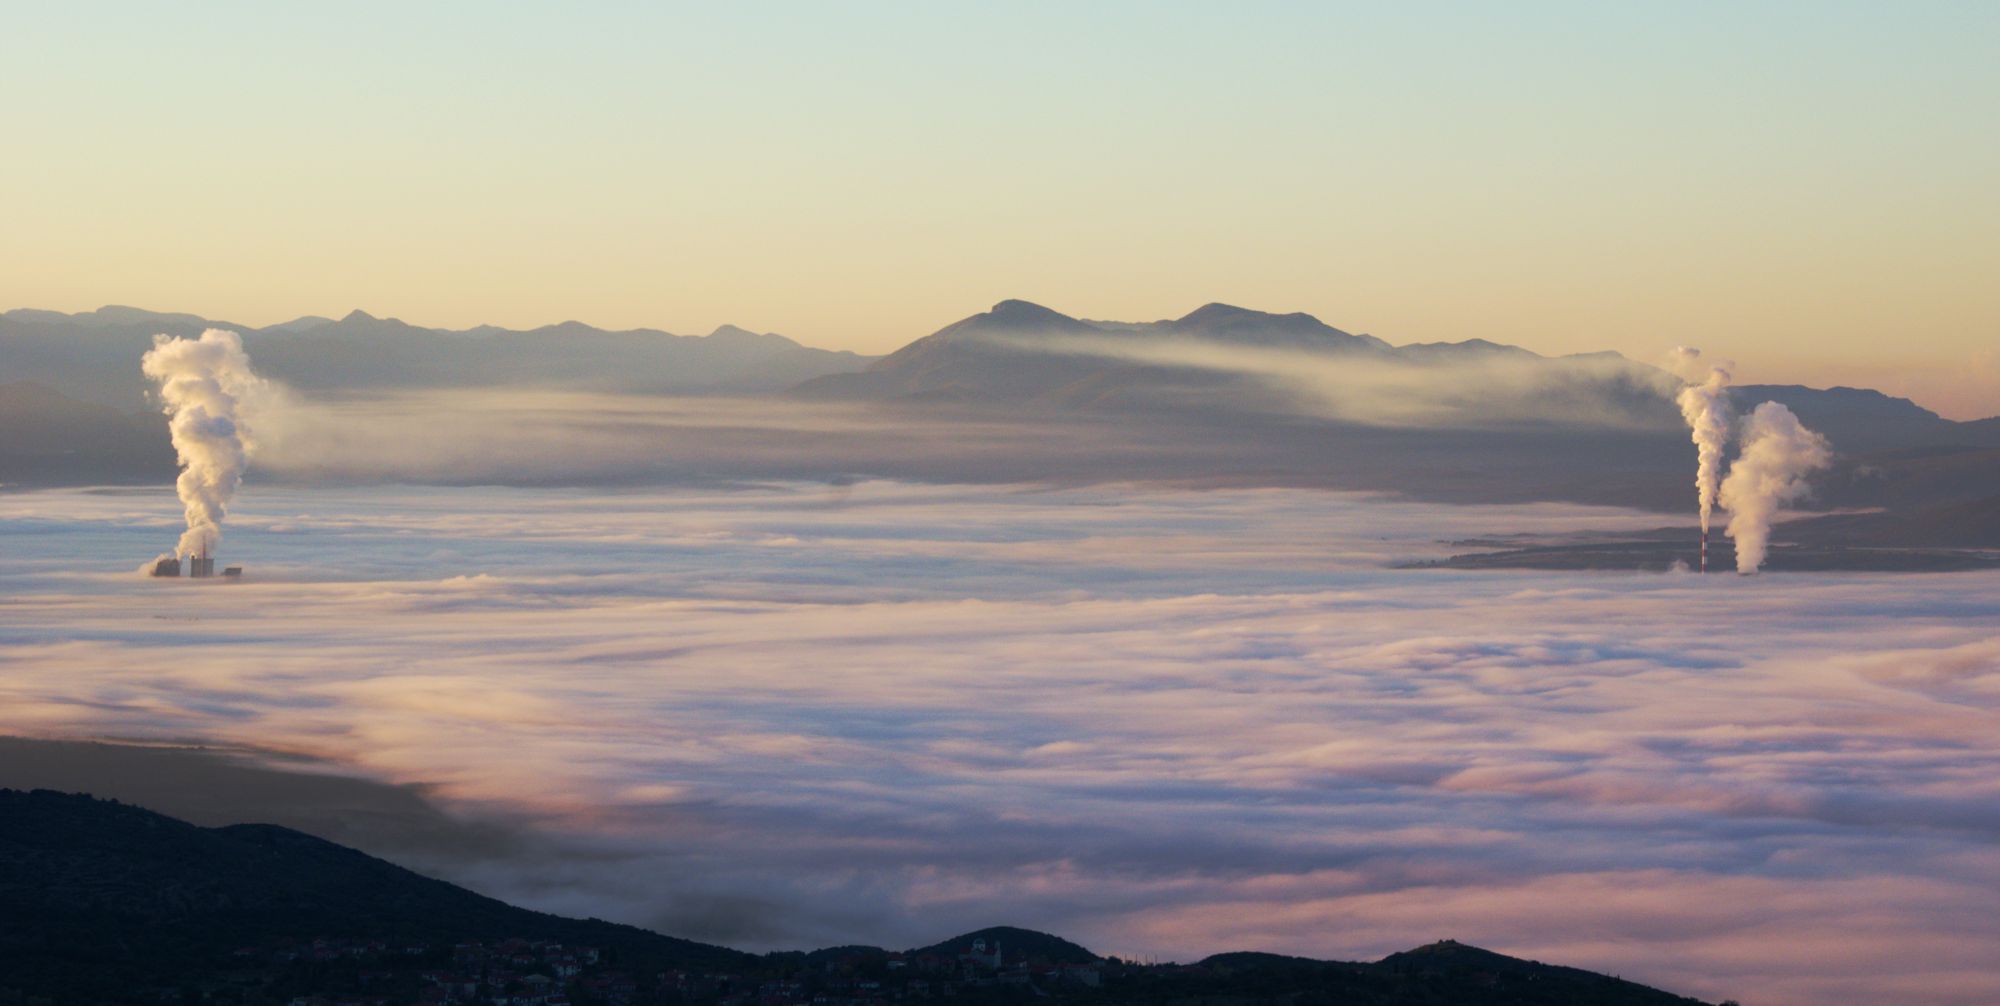 Μεγαλόπολη: Η λεκάνη της Μεγαλόπολης μέσα στη συνηθισμένη πρωινή ομίχλη. Ξεχωρίζουν οι στήλες υδρατμών των δύο θερμοηλεκτρικών μονάδων της ΔΕΗ